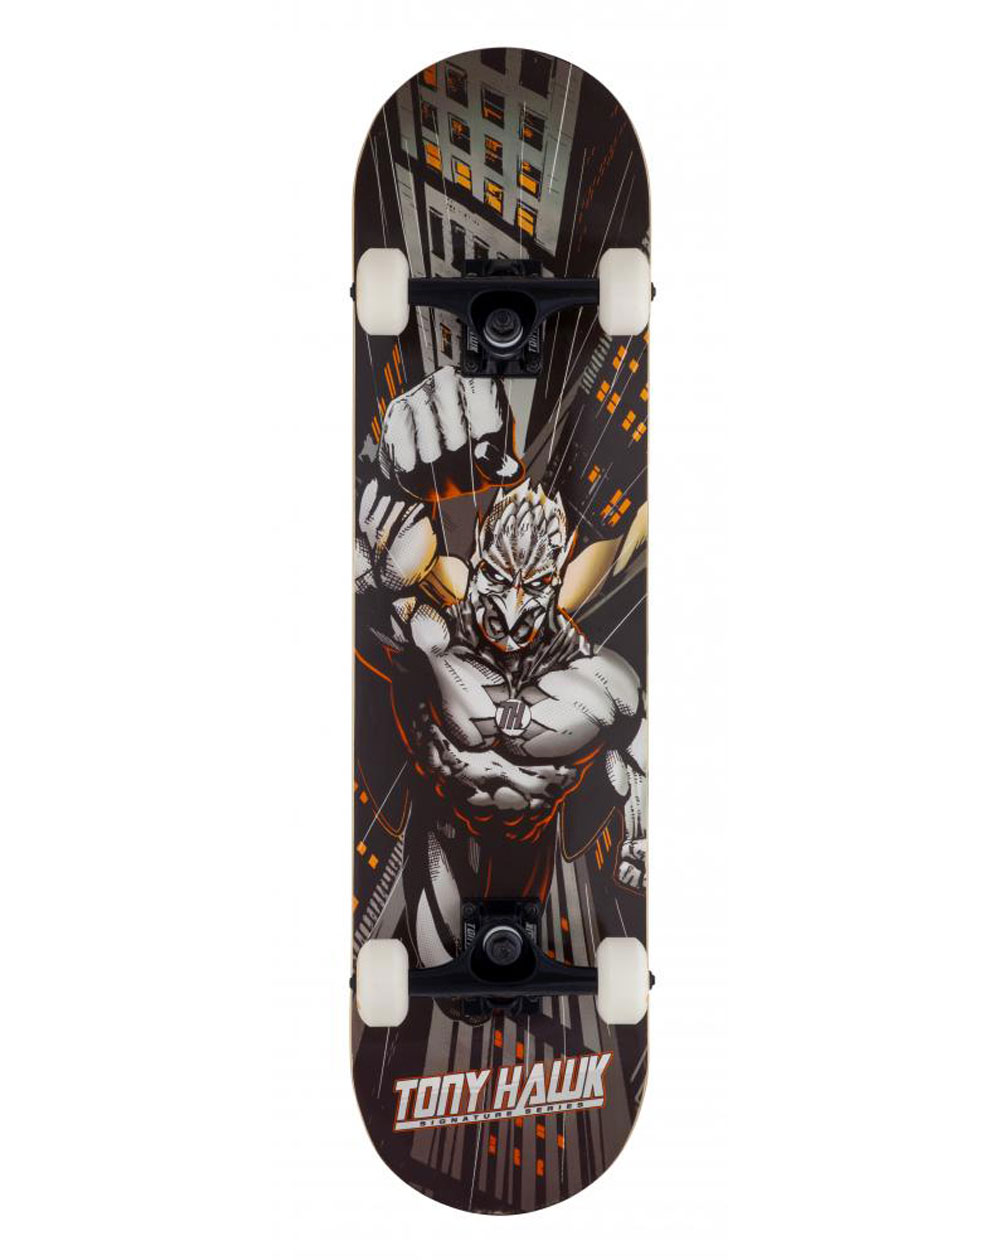 Tony Hawk Skateboard Completo Skyscaper 7.75" Orange